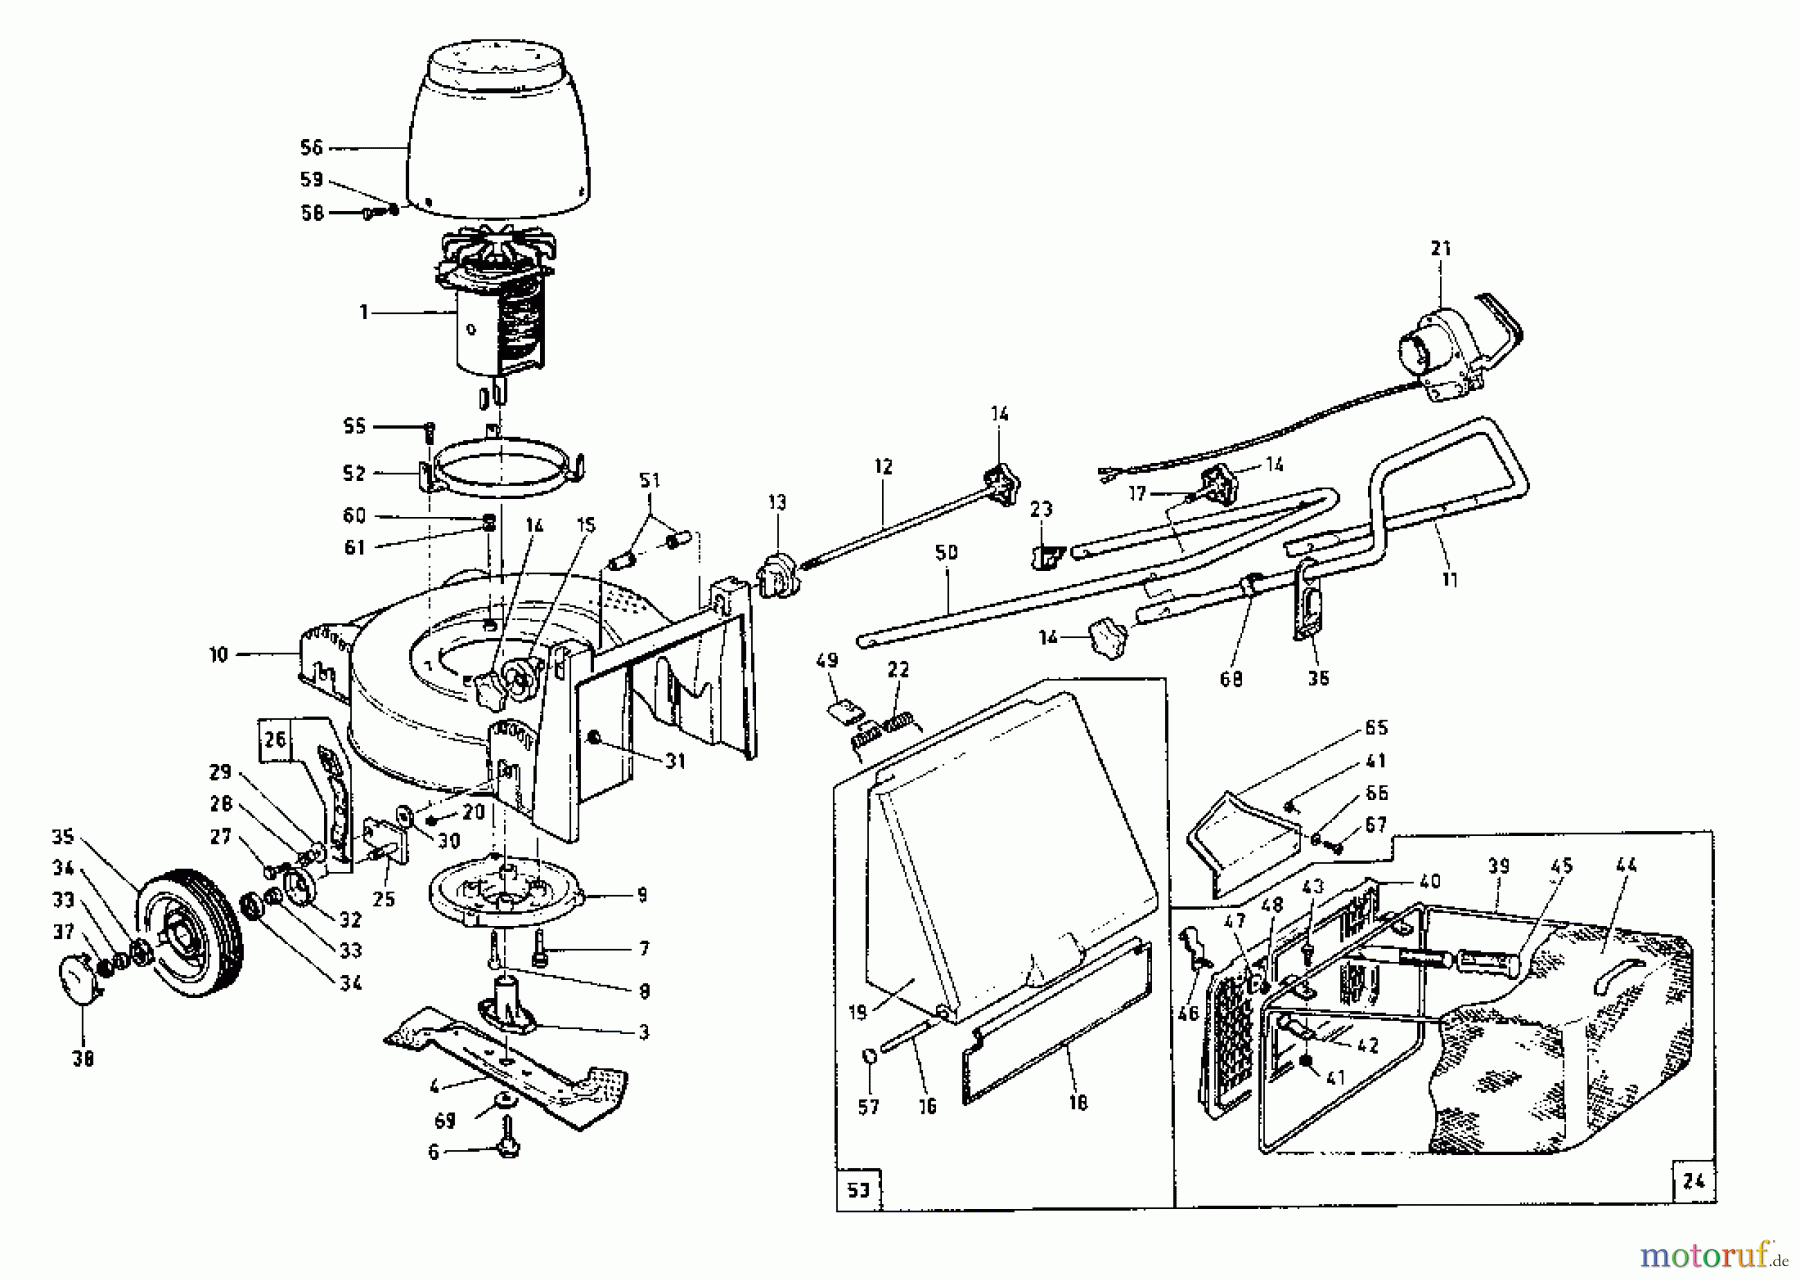  Rotaro Elektromäher ROTARO  40  E 189-0143  (1989) Grundgerät